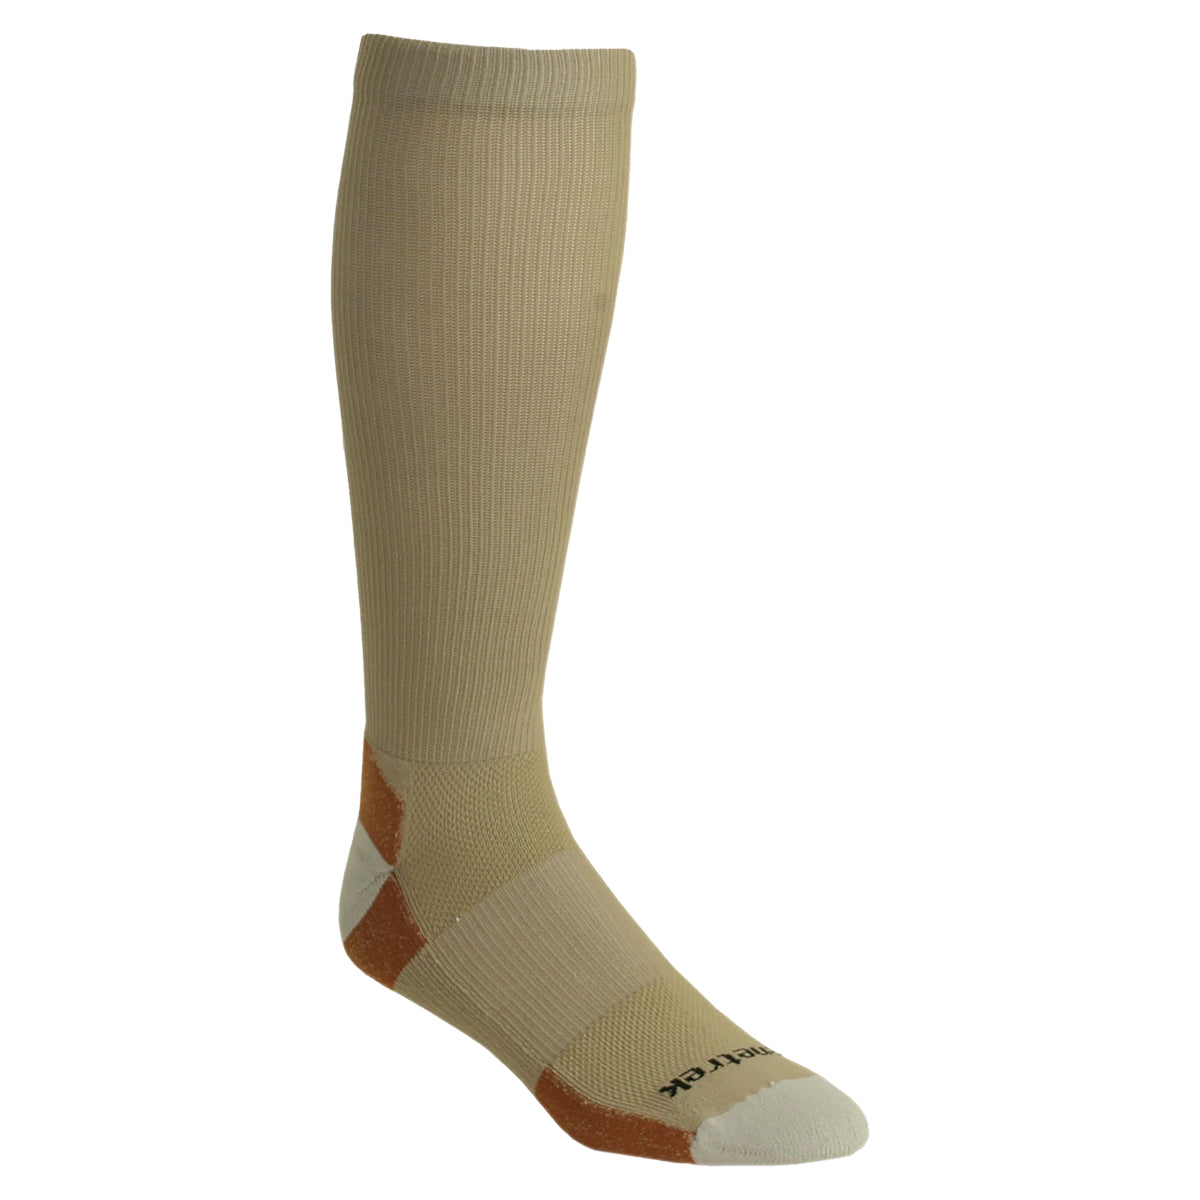 Kenetrek Ultimate Liner Socks in  by GOHUNT | Kenetrek - GOHUNT Shop